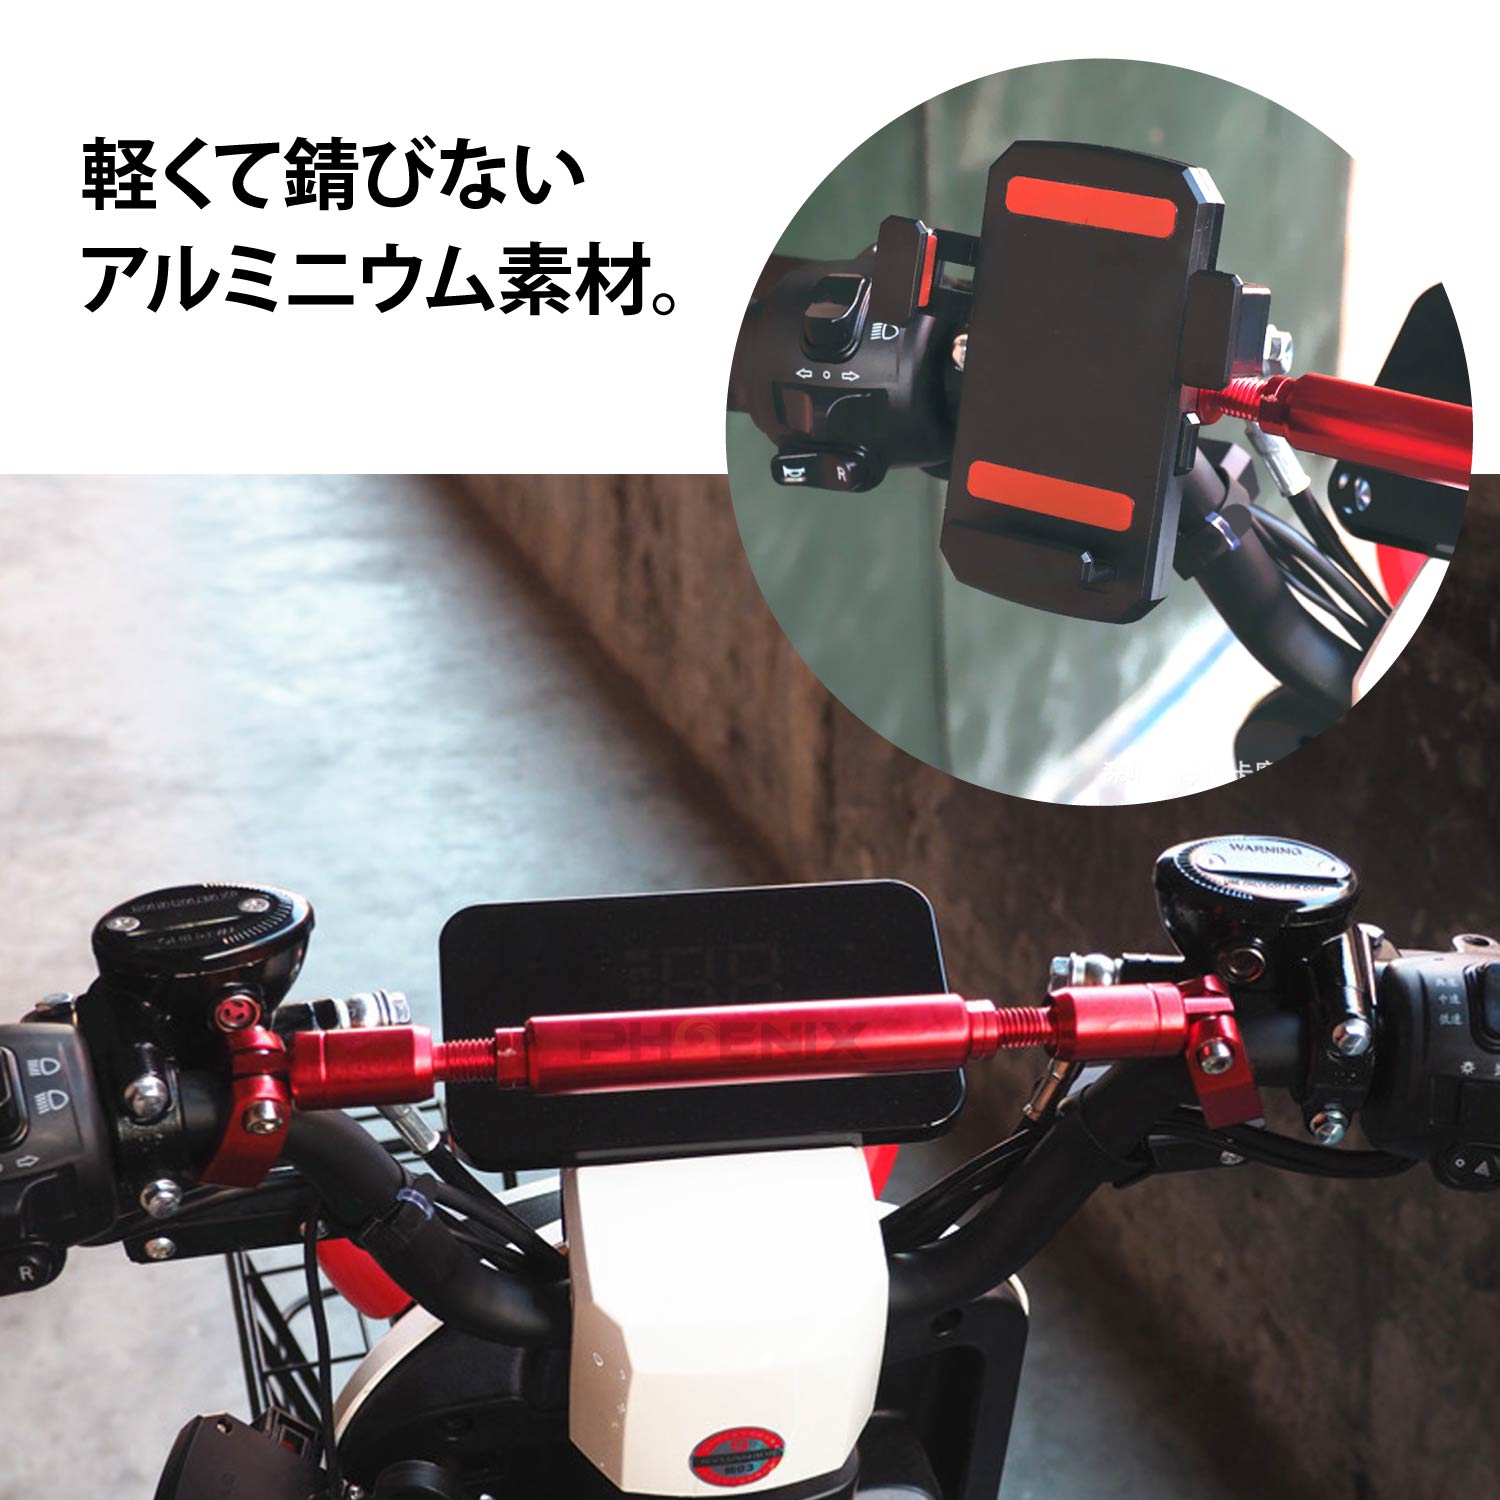  распорка "brace bar" 22.2Φ руль aluminium мотоцикл универсальный регулировка c функцией универсальный 4 цвет 